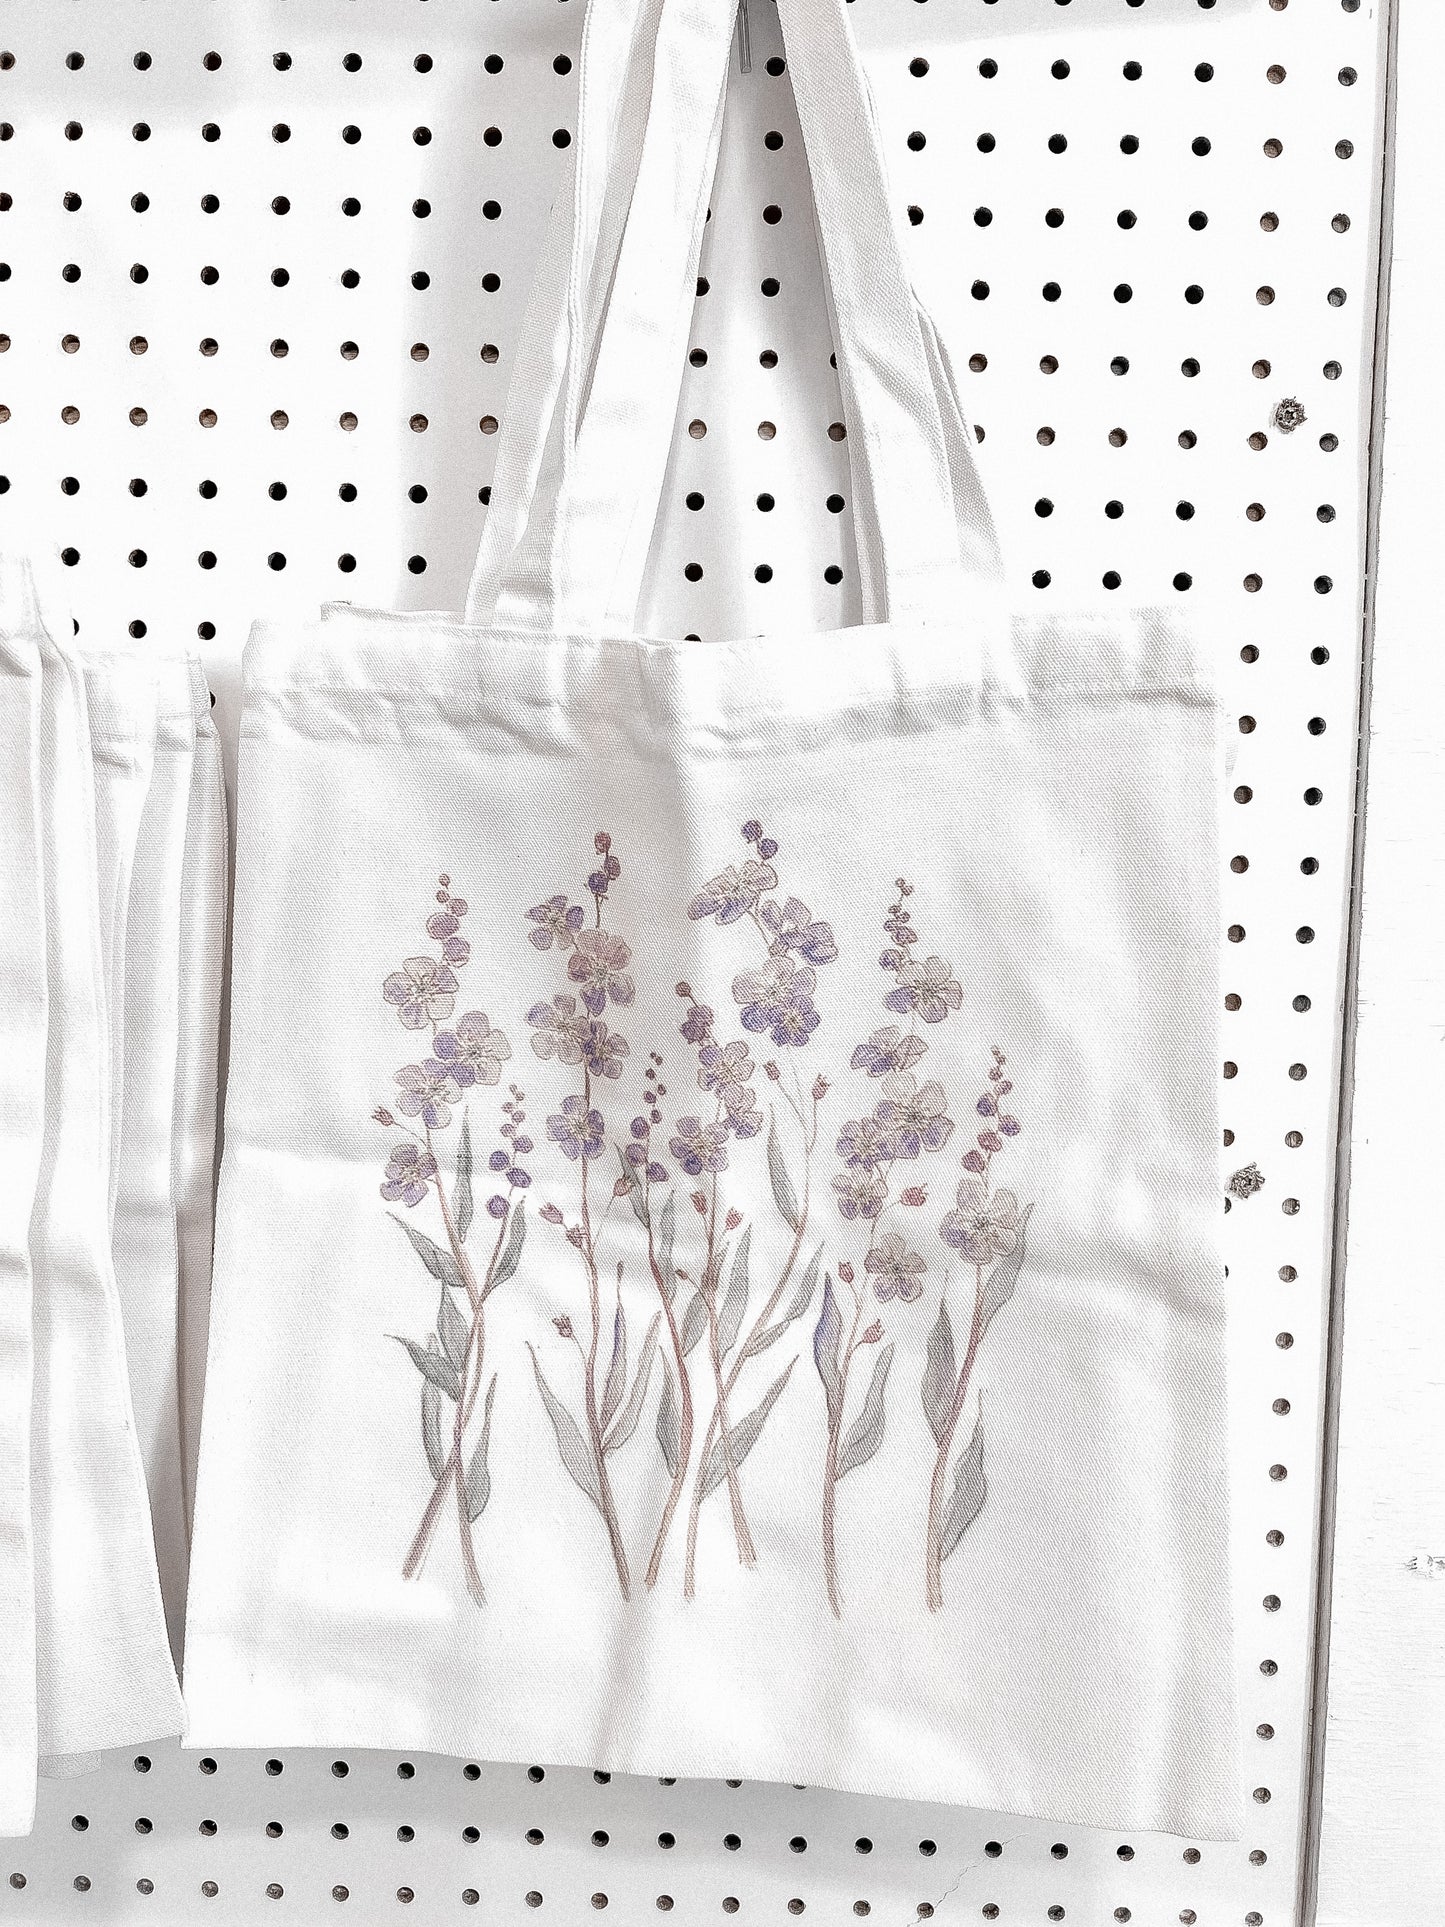 Flower Tote Bags